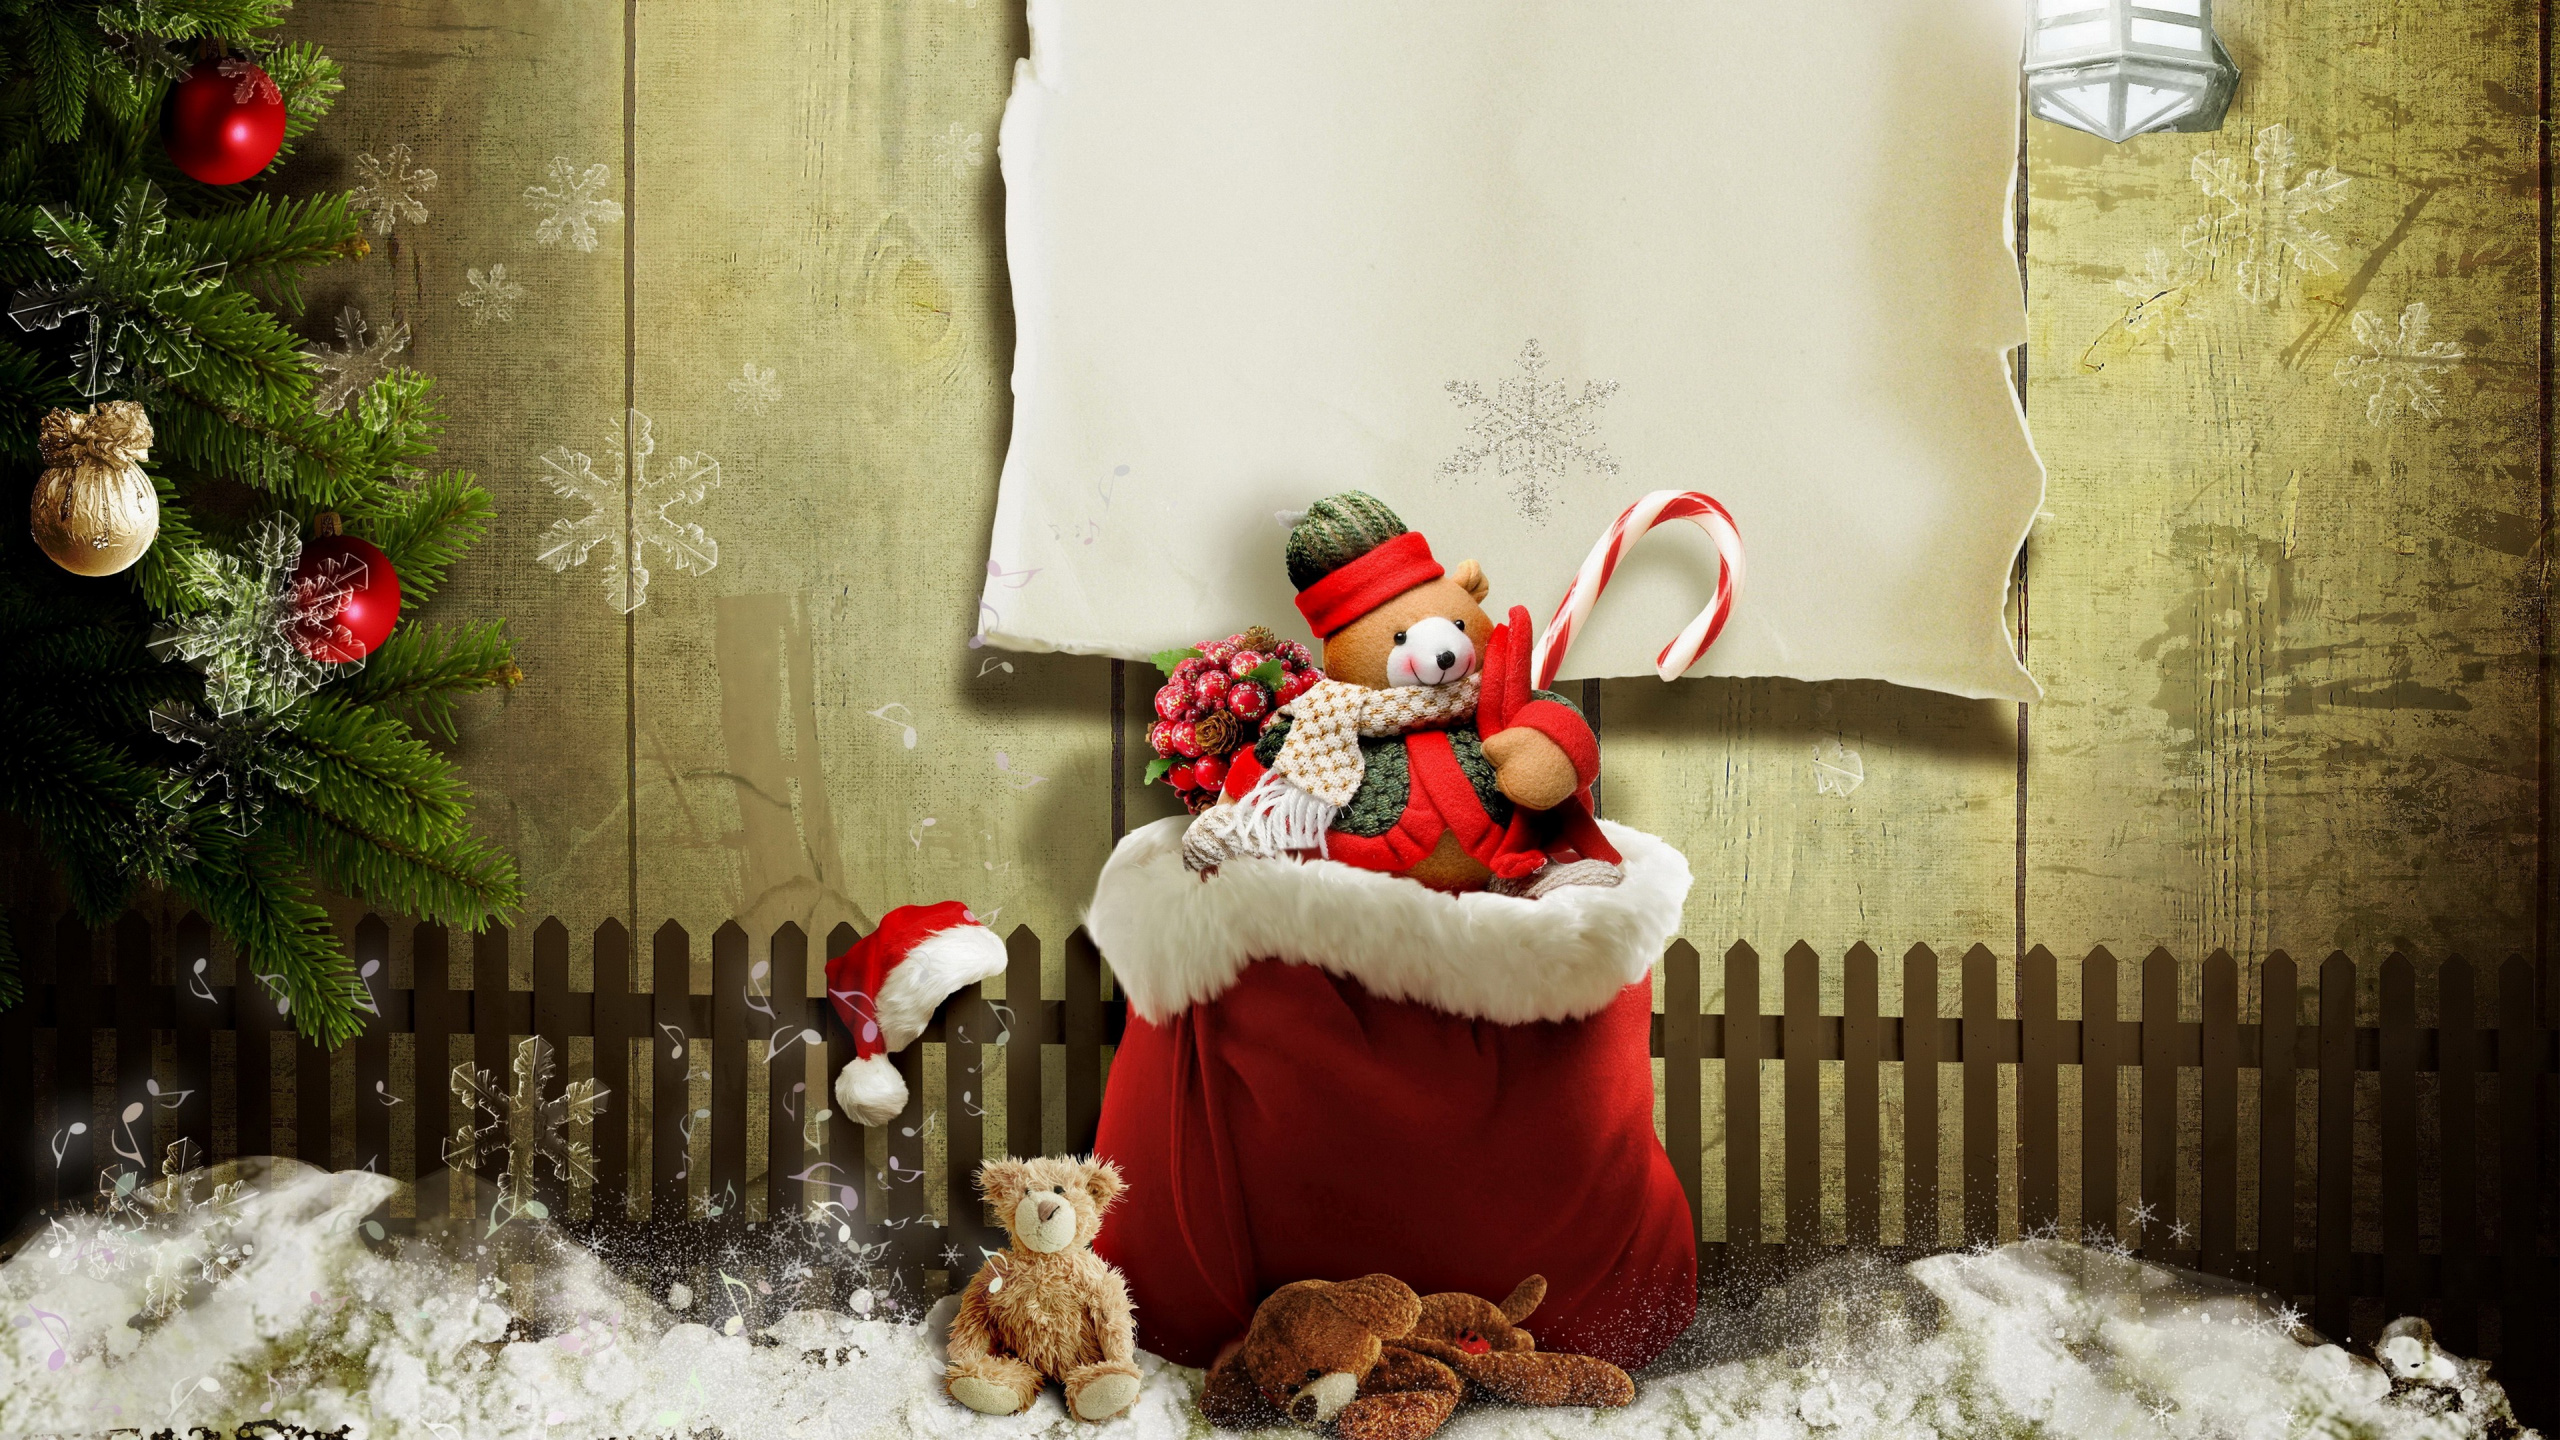 Le Jour De Noël, Santa Claus, Cadeau de Noël, Ornement de Noël, Hiver. Wallpaper in 2560x1440 Resolution